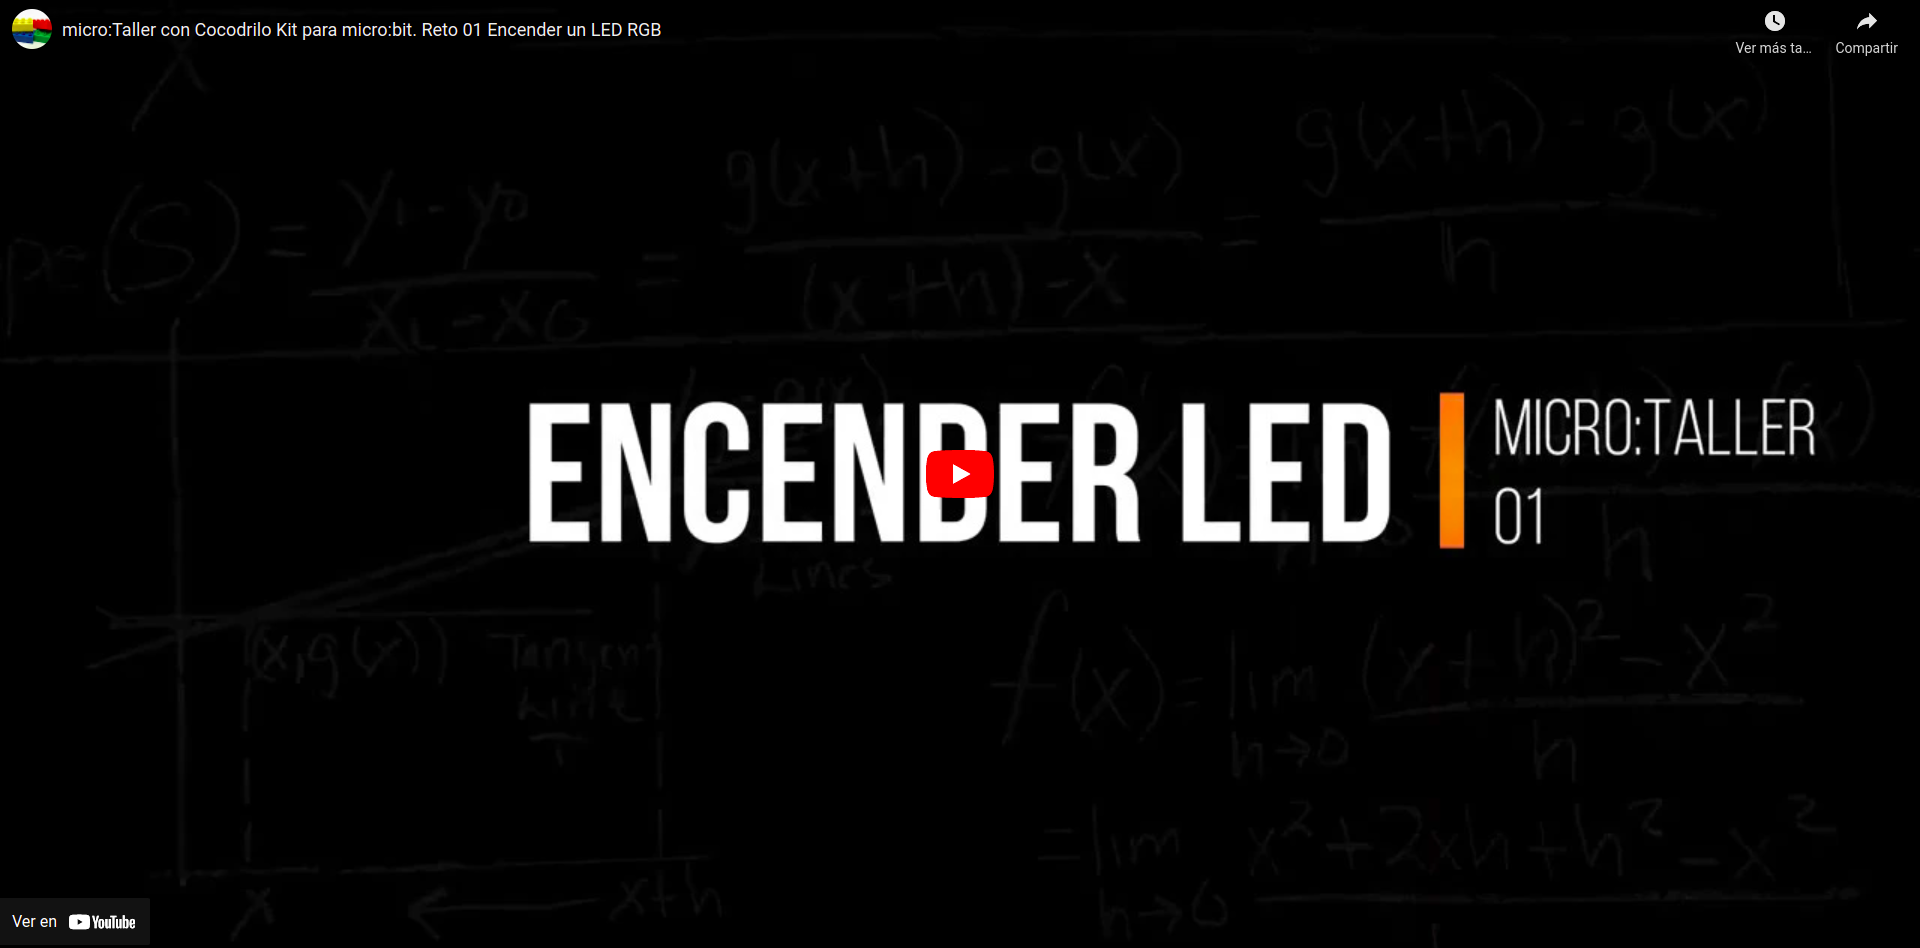 Vídeo que describe el encendido de un LED externo conectado a una micro:bit